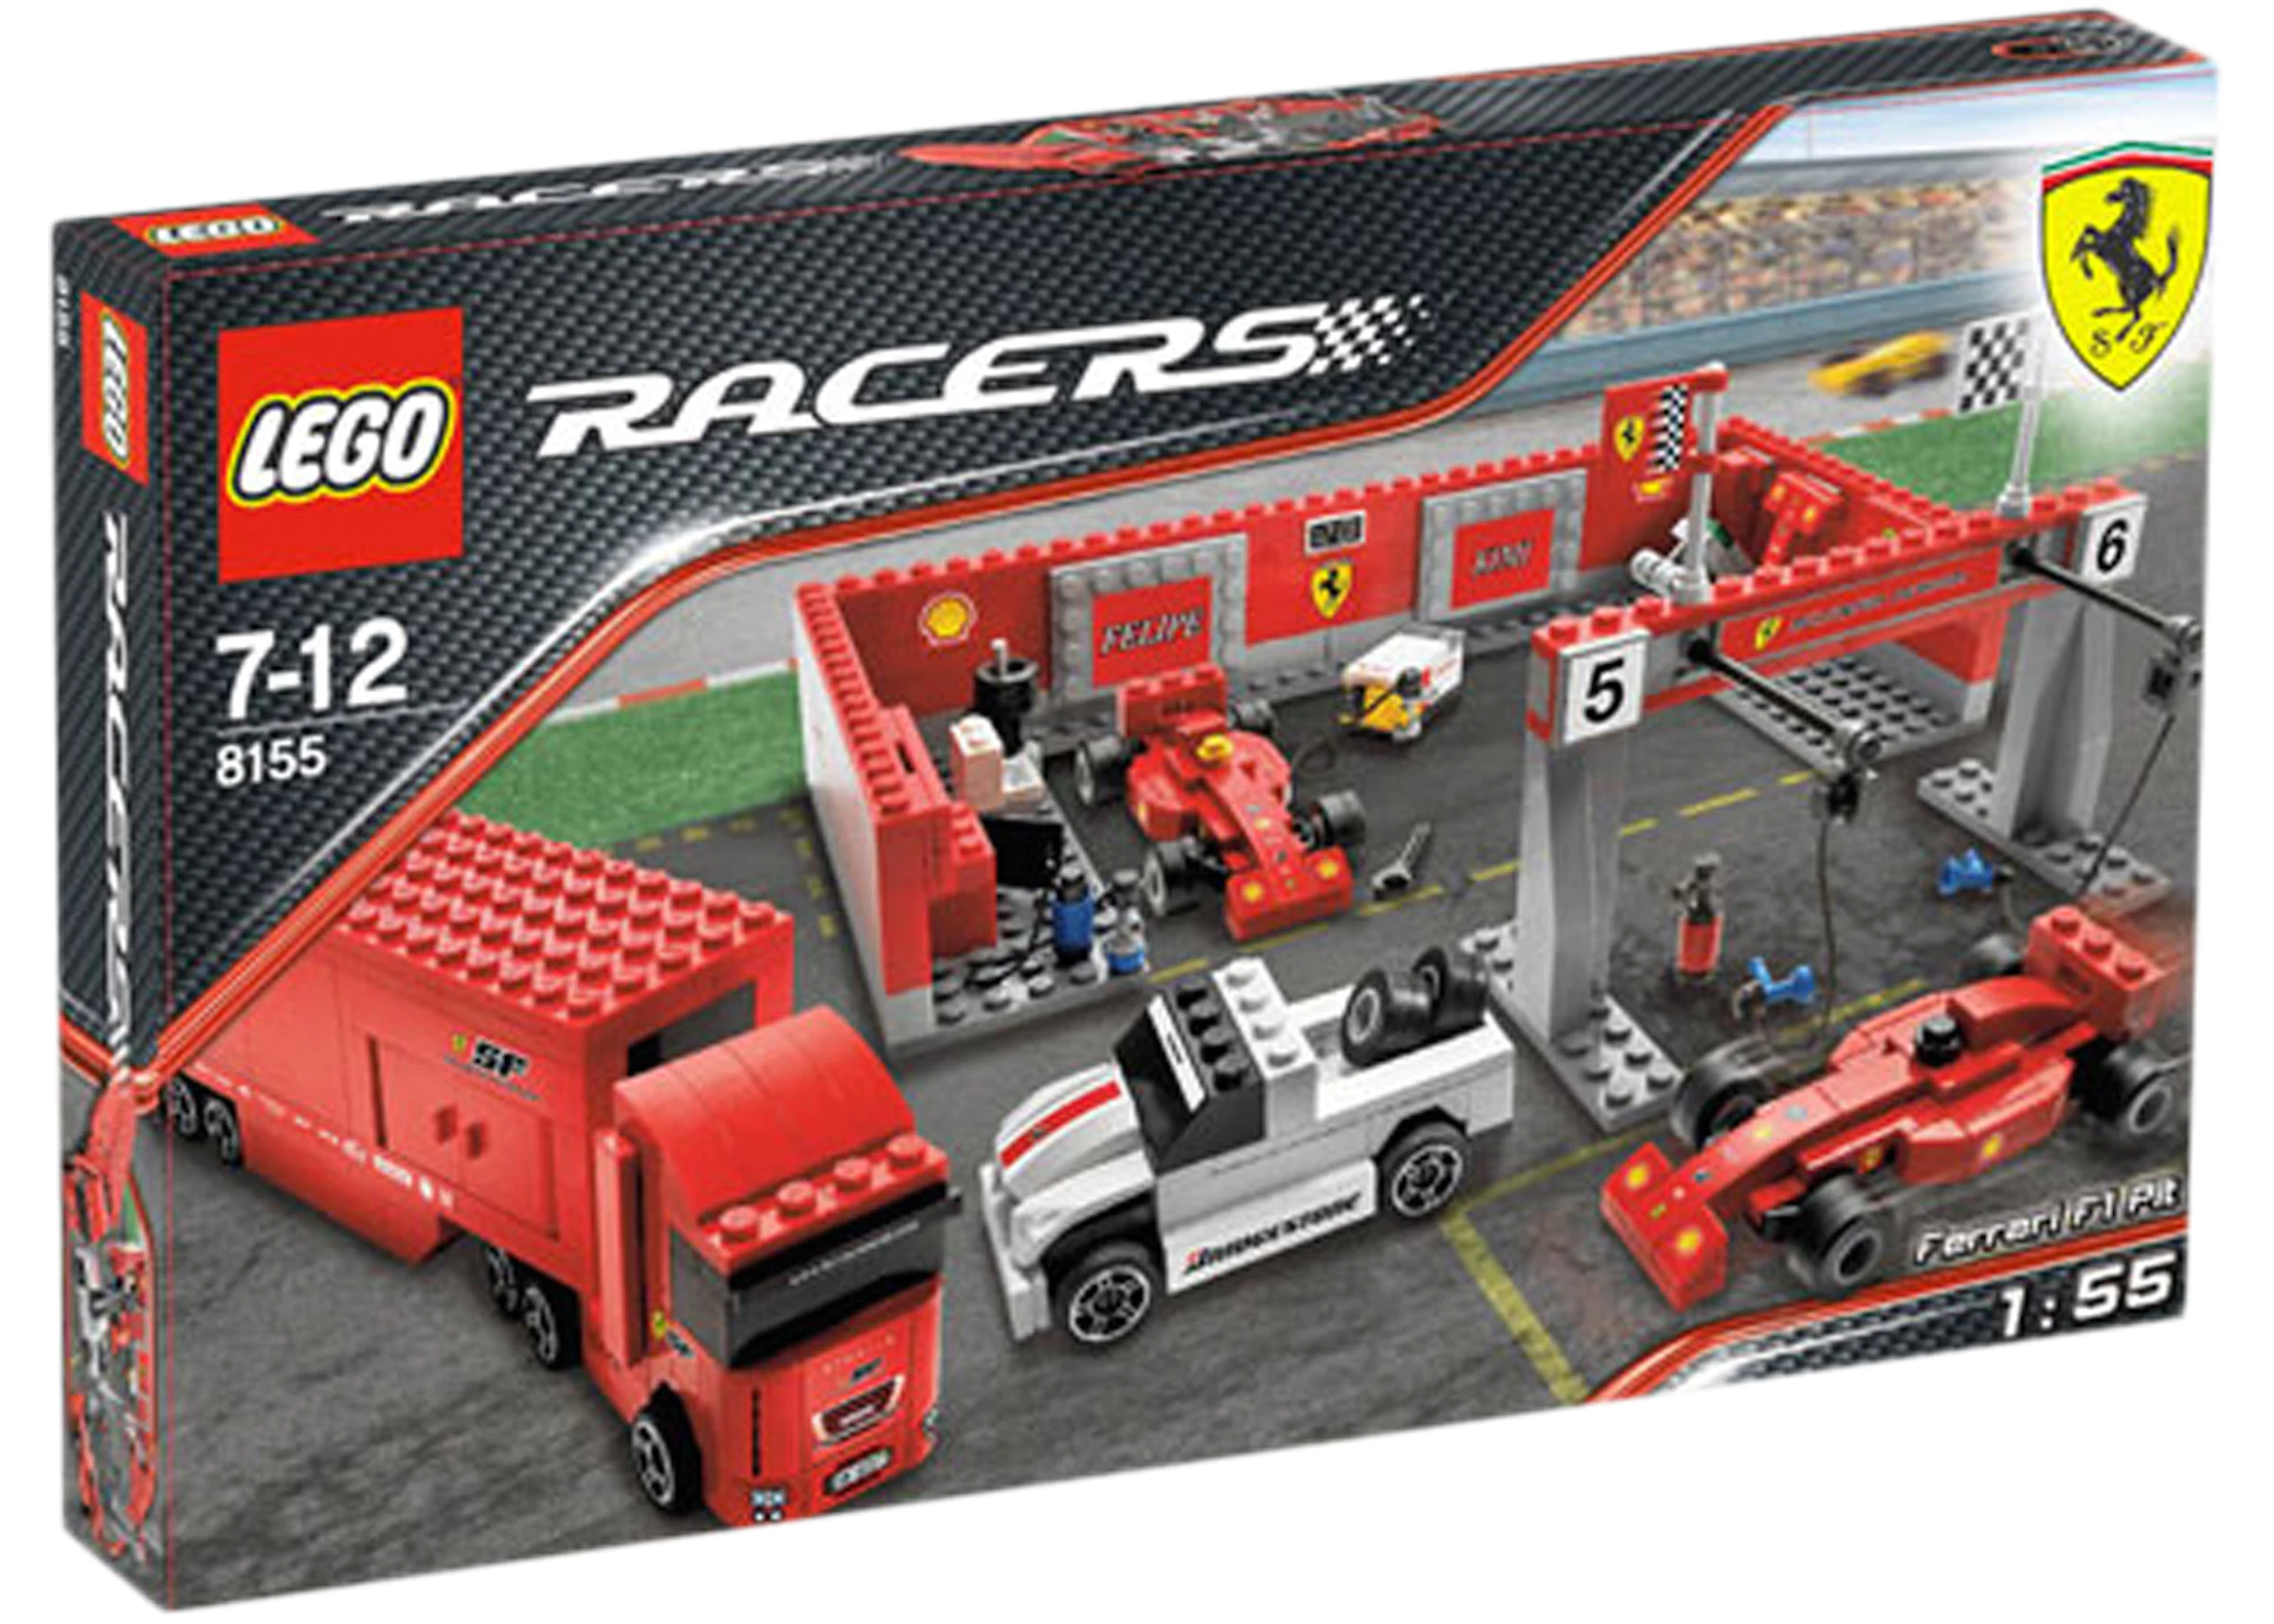 LEGO Ferrari F1 Pit Set 8155 - ES